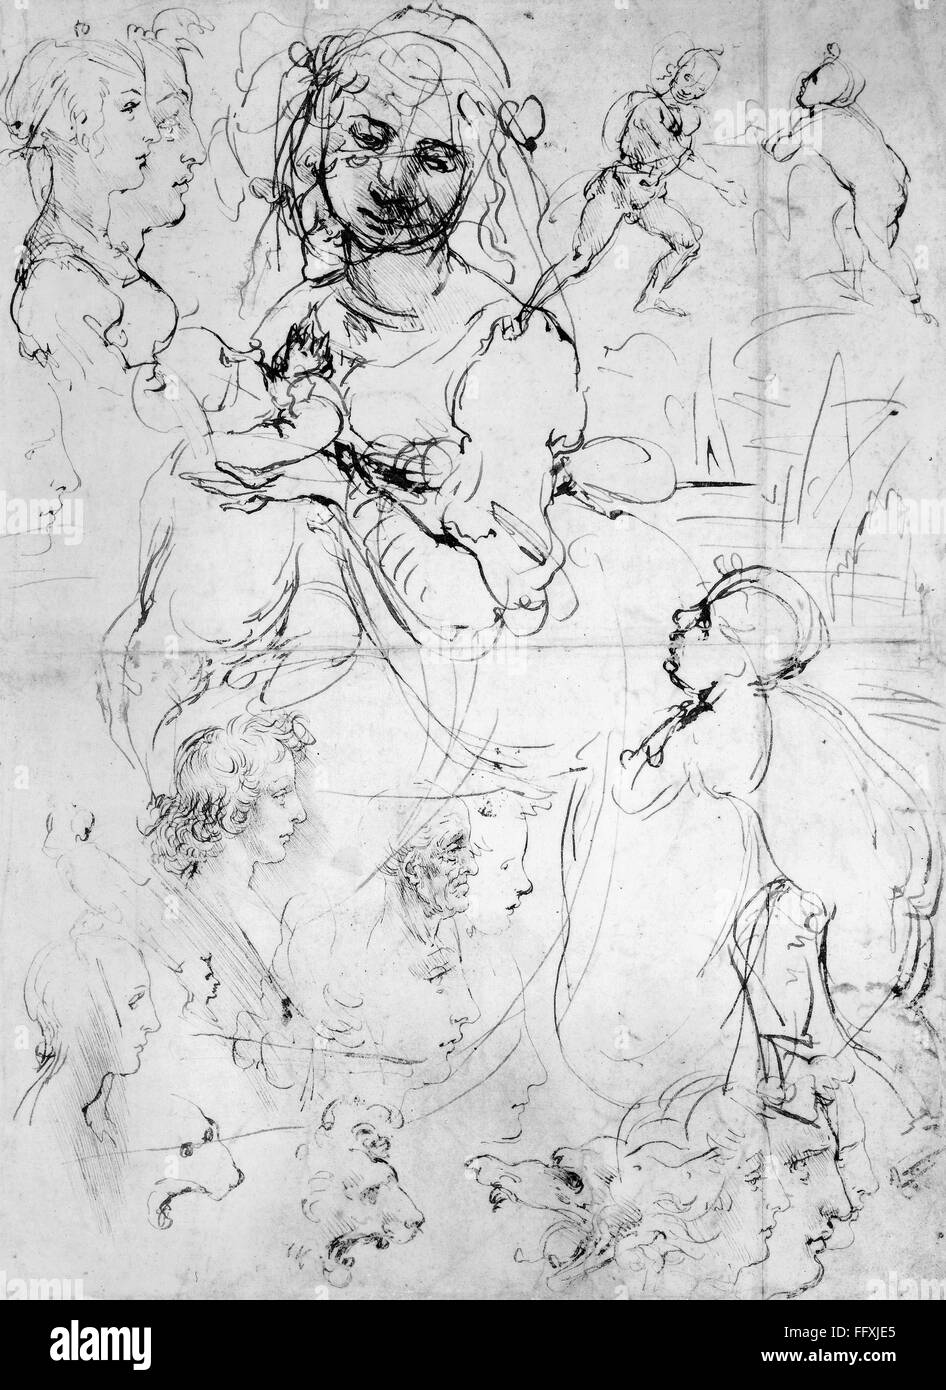 DA VINCI: SKETCHES. /nPage of sketches by Leonardo da Vinci (1452-1519). Stock Photo